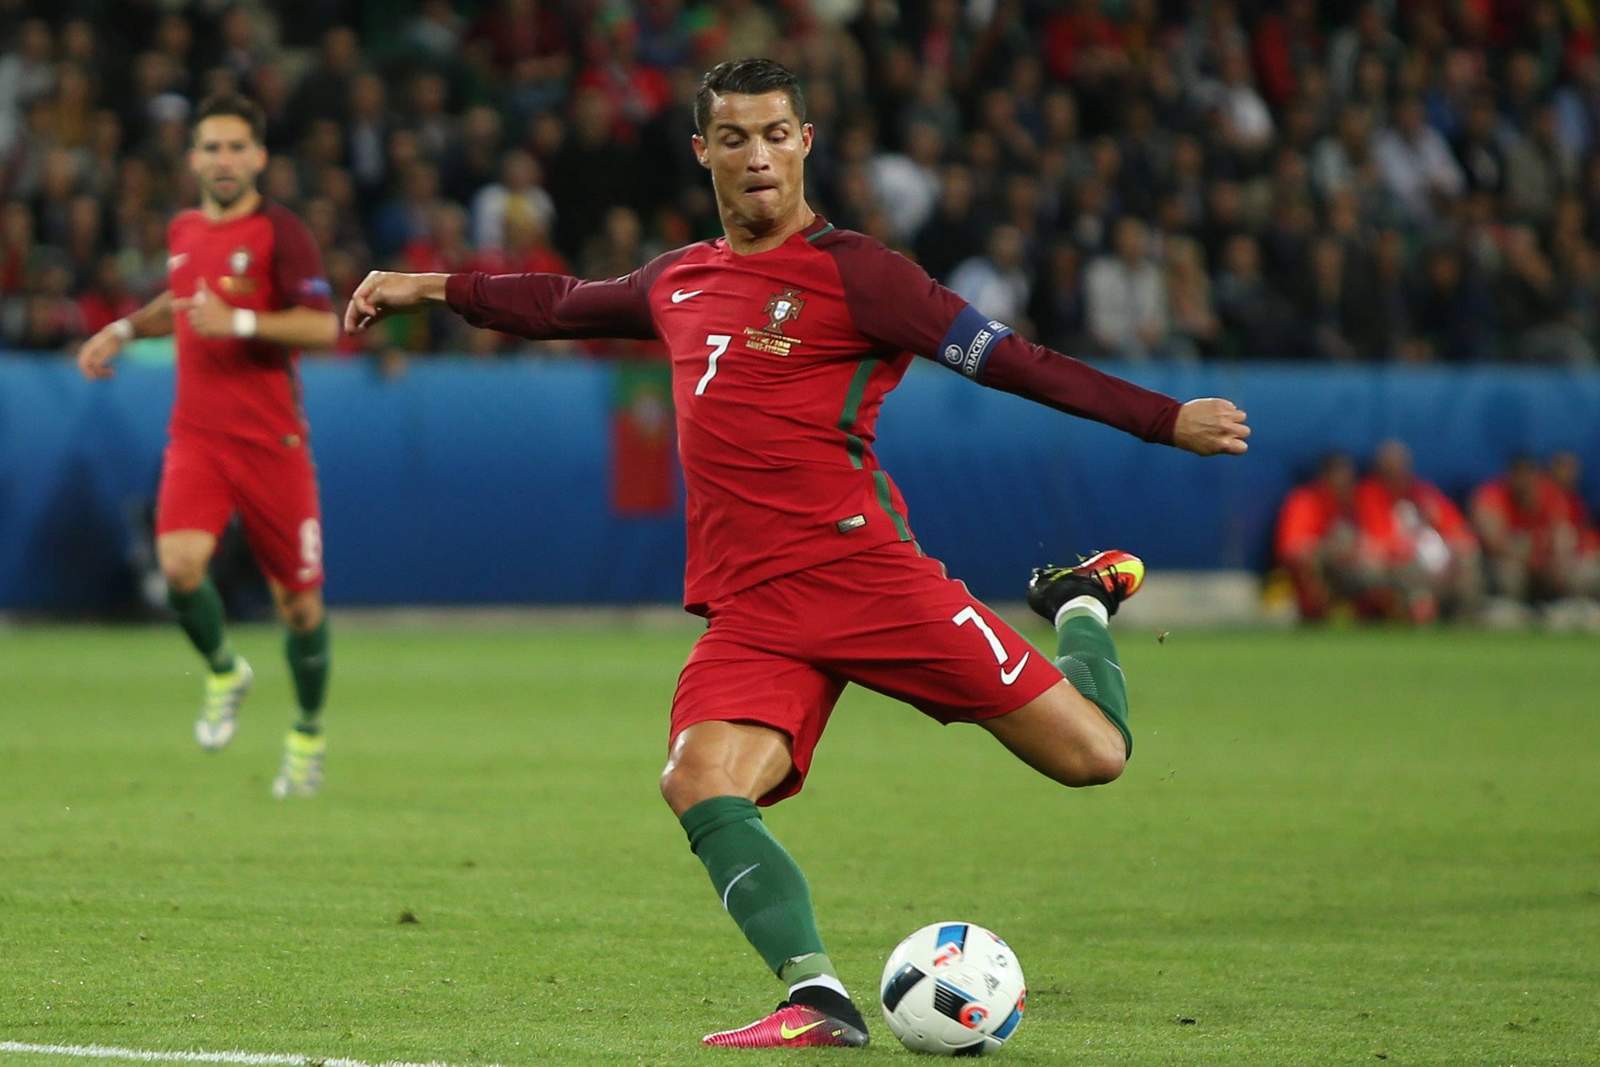 Zielt Ronaldo wieder richtig? Unser Tipp: Portugal gewinnt nicht gegen Österreich